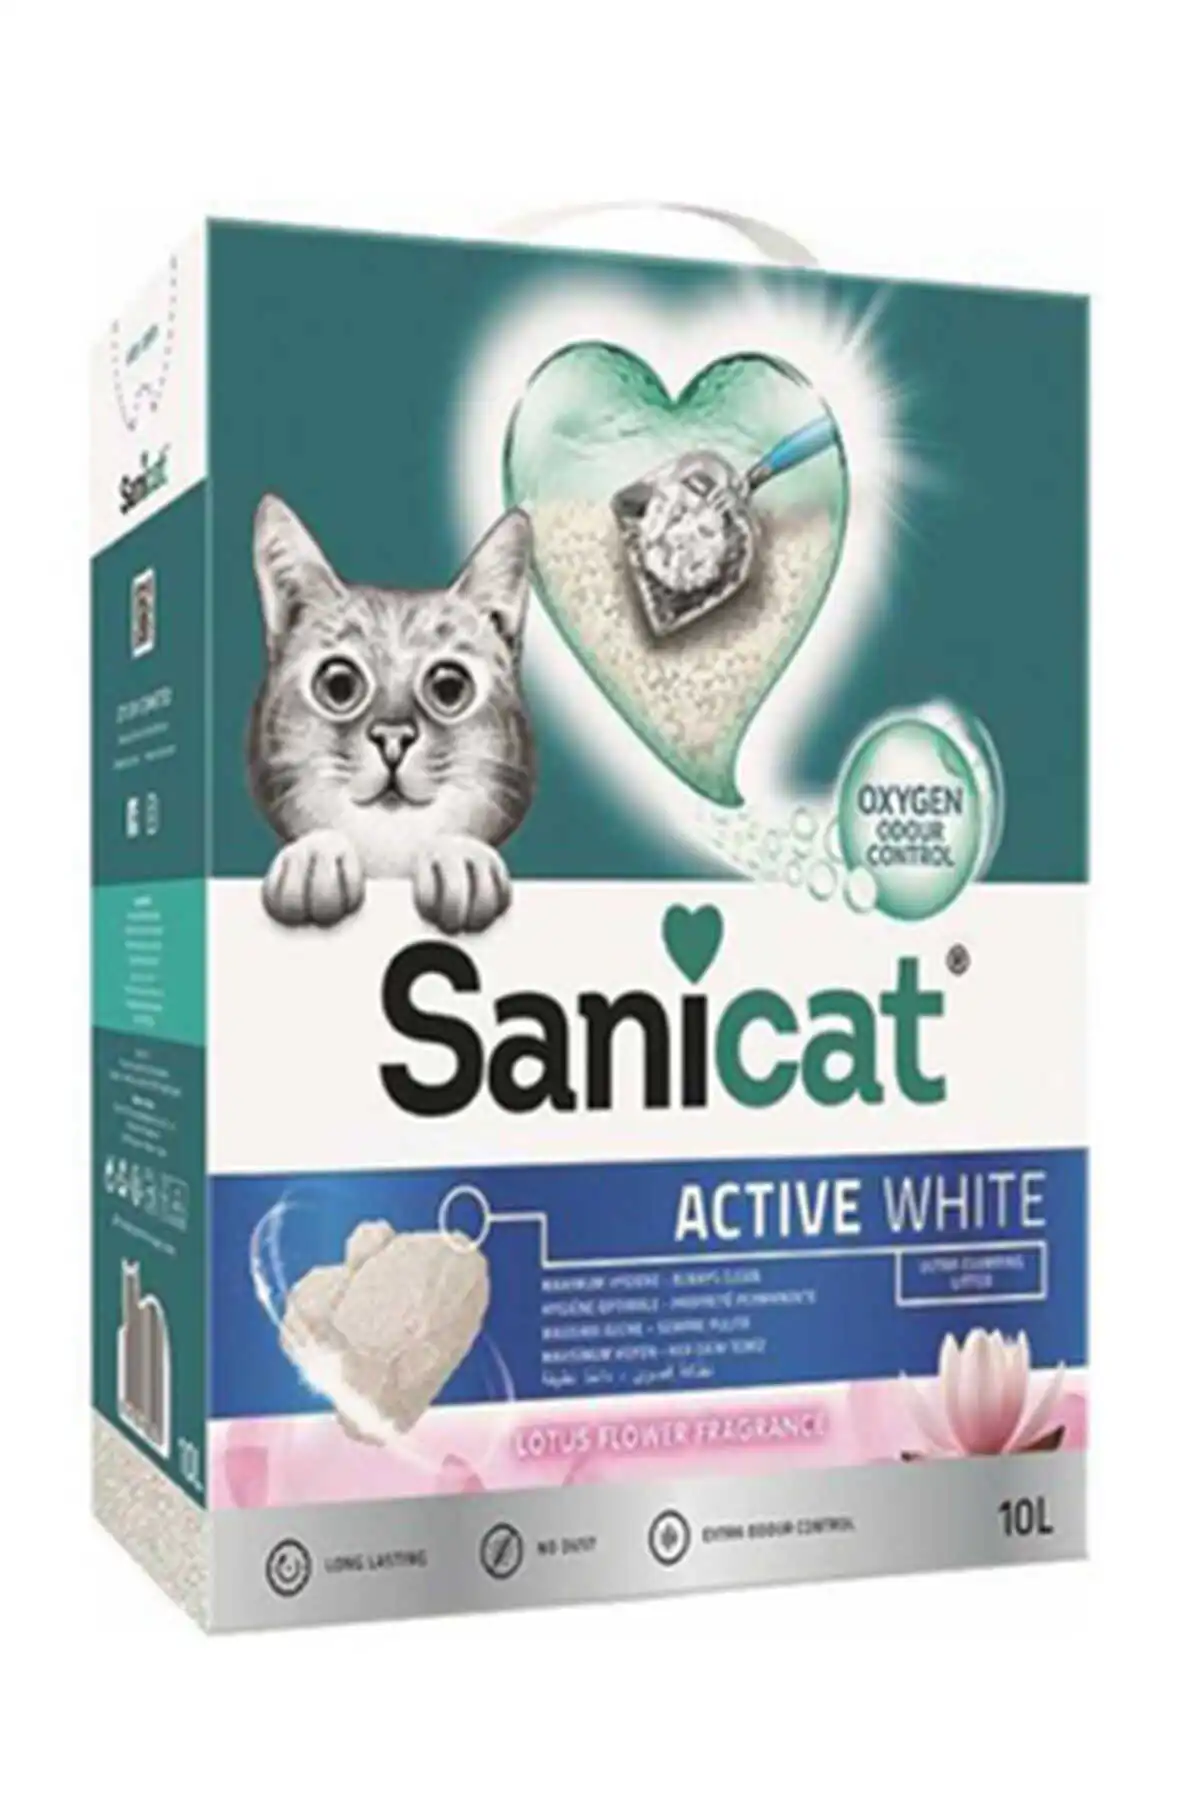 Sanicat Active White Oksijen Kontrollü Koku Emici Lotus Çiçeği Kokulu Ultra Topaklanan Kedi Kumu 10lt